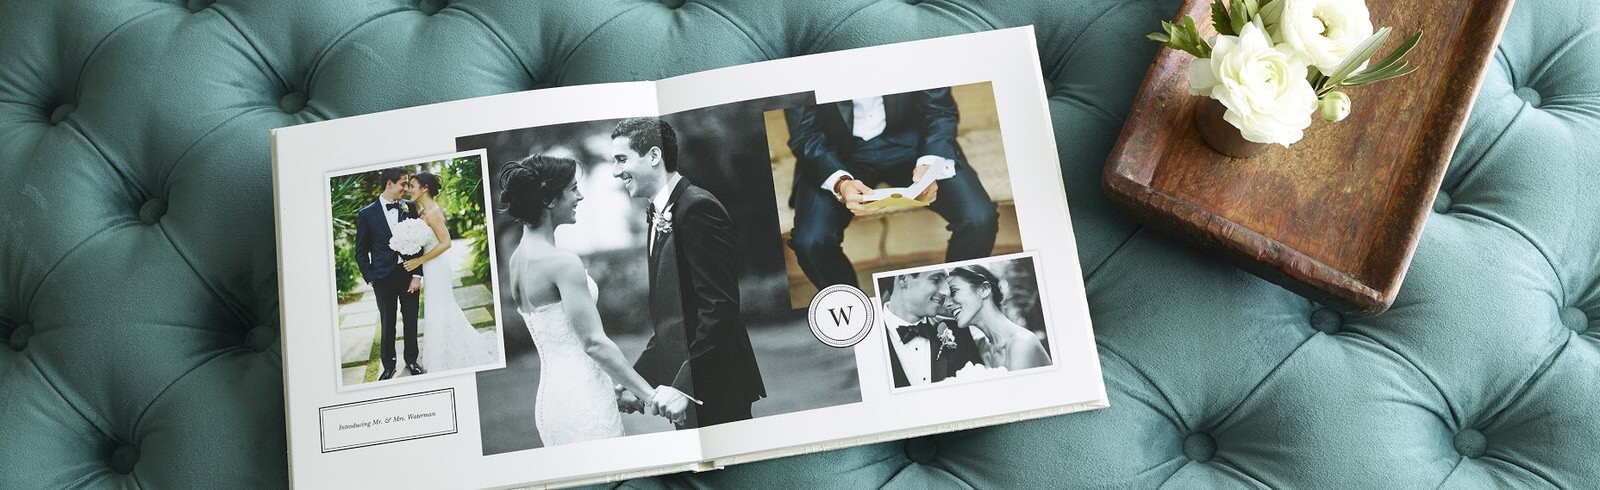 A wedding photo book.